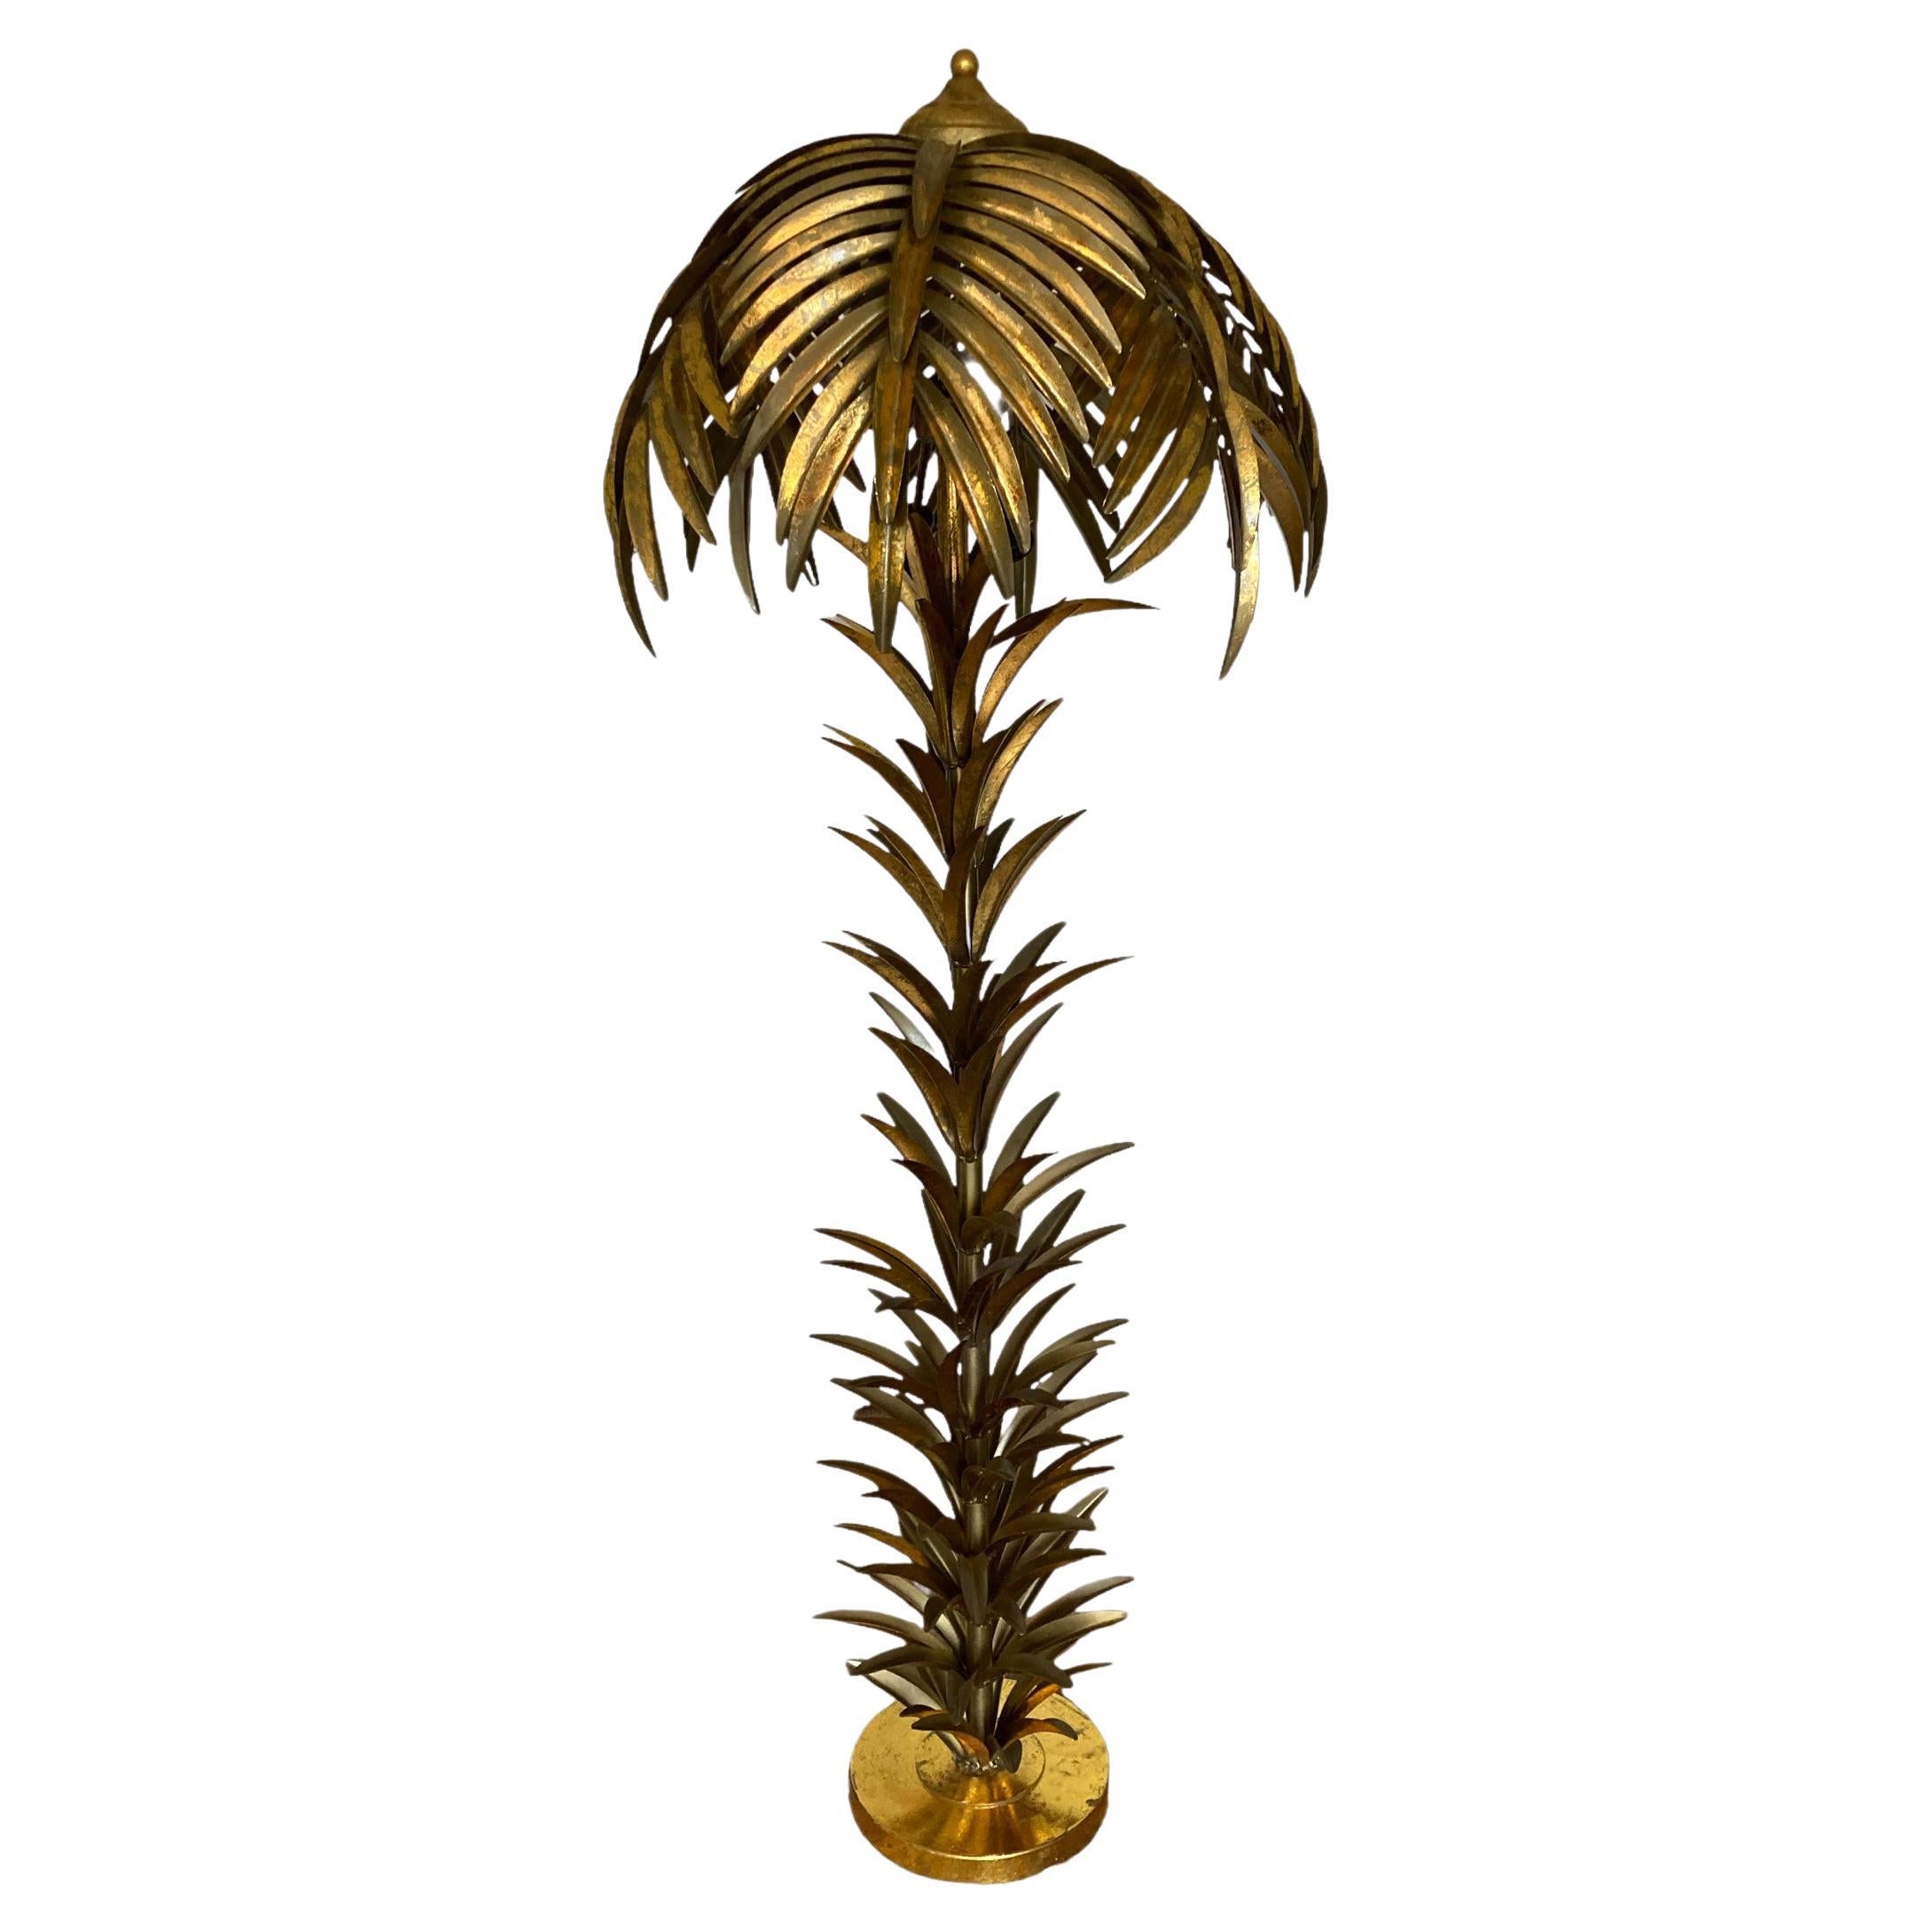 Lampadaire de style Hollywood Regency en métal doré représentant un palmier, milieu ou fin du 20e siècle